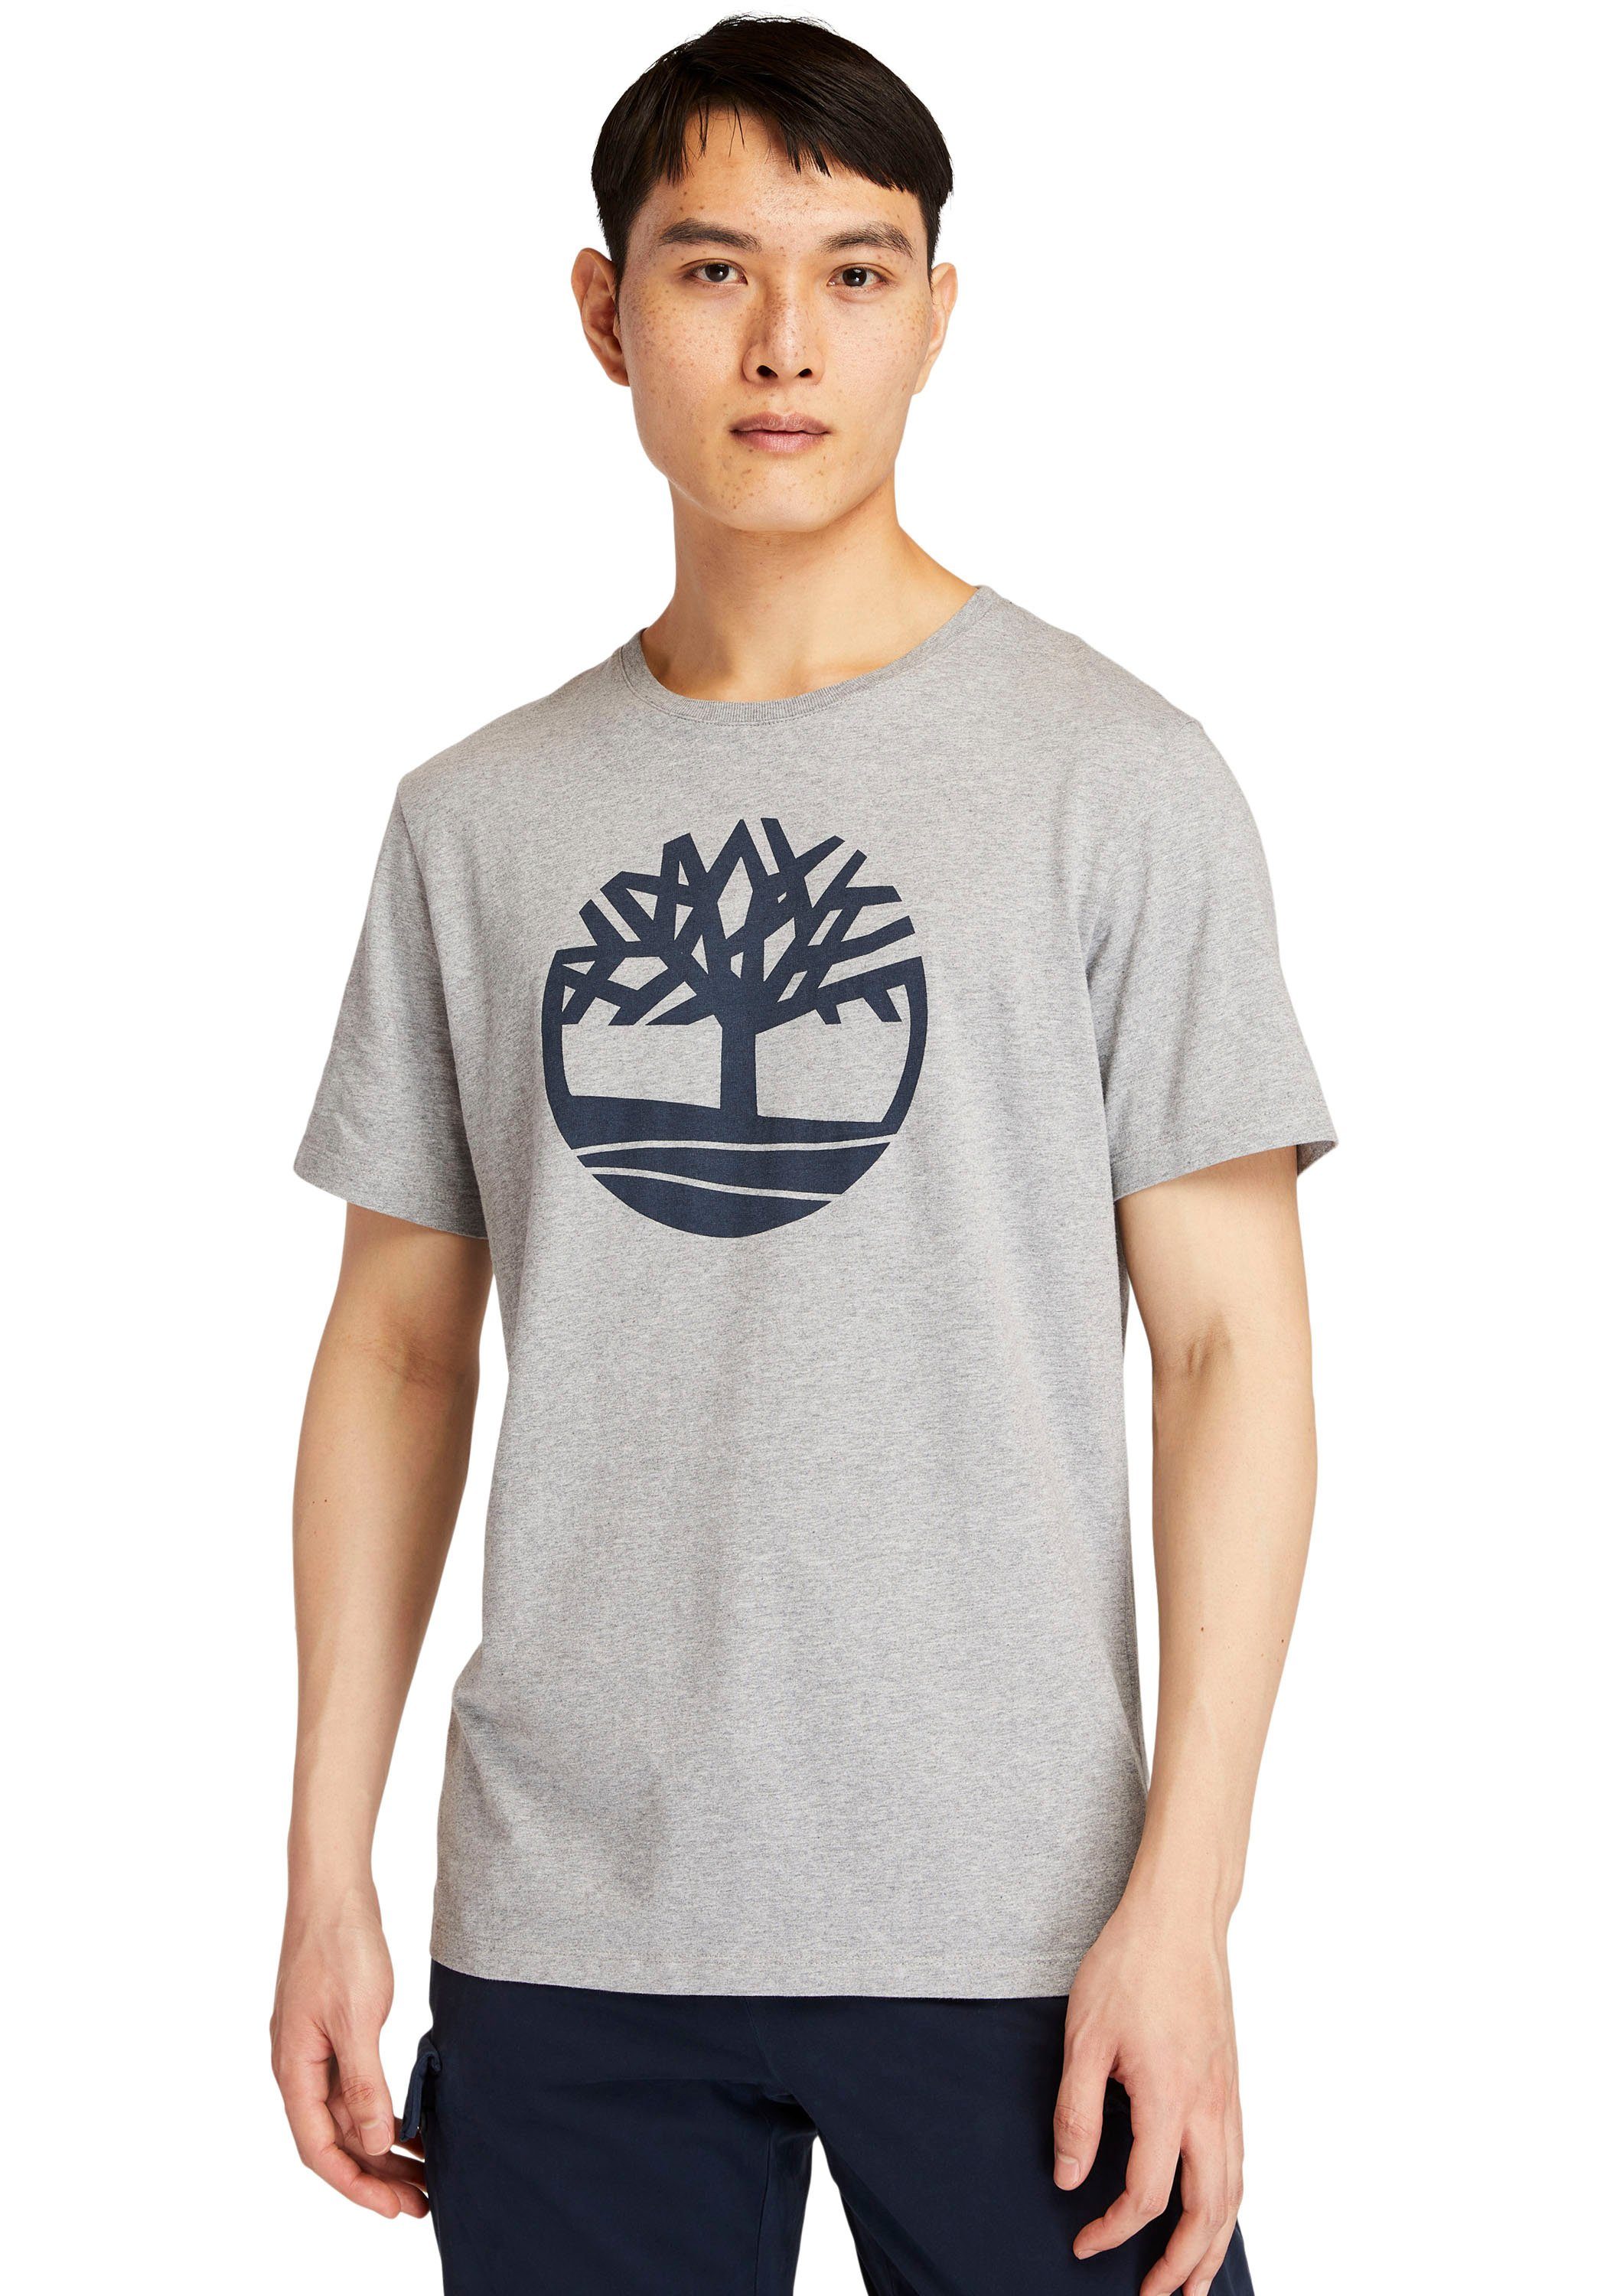 Timberland T-Shirt Kennebec River Tree grau meliert